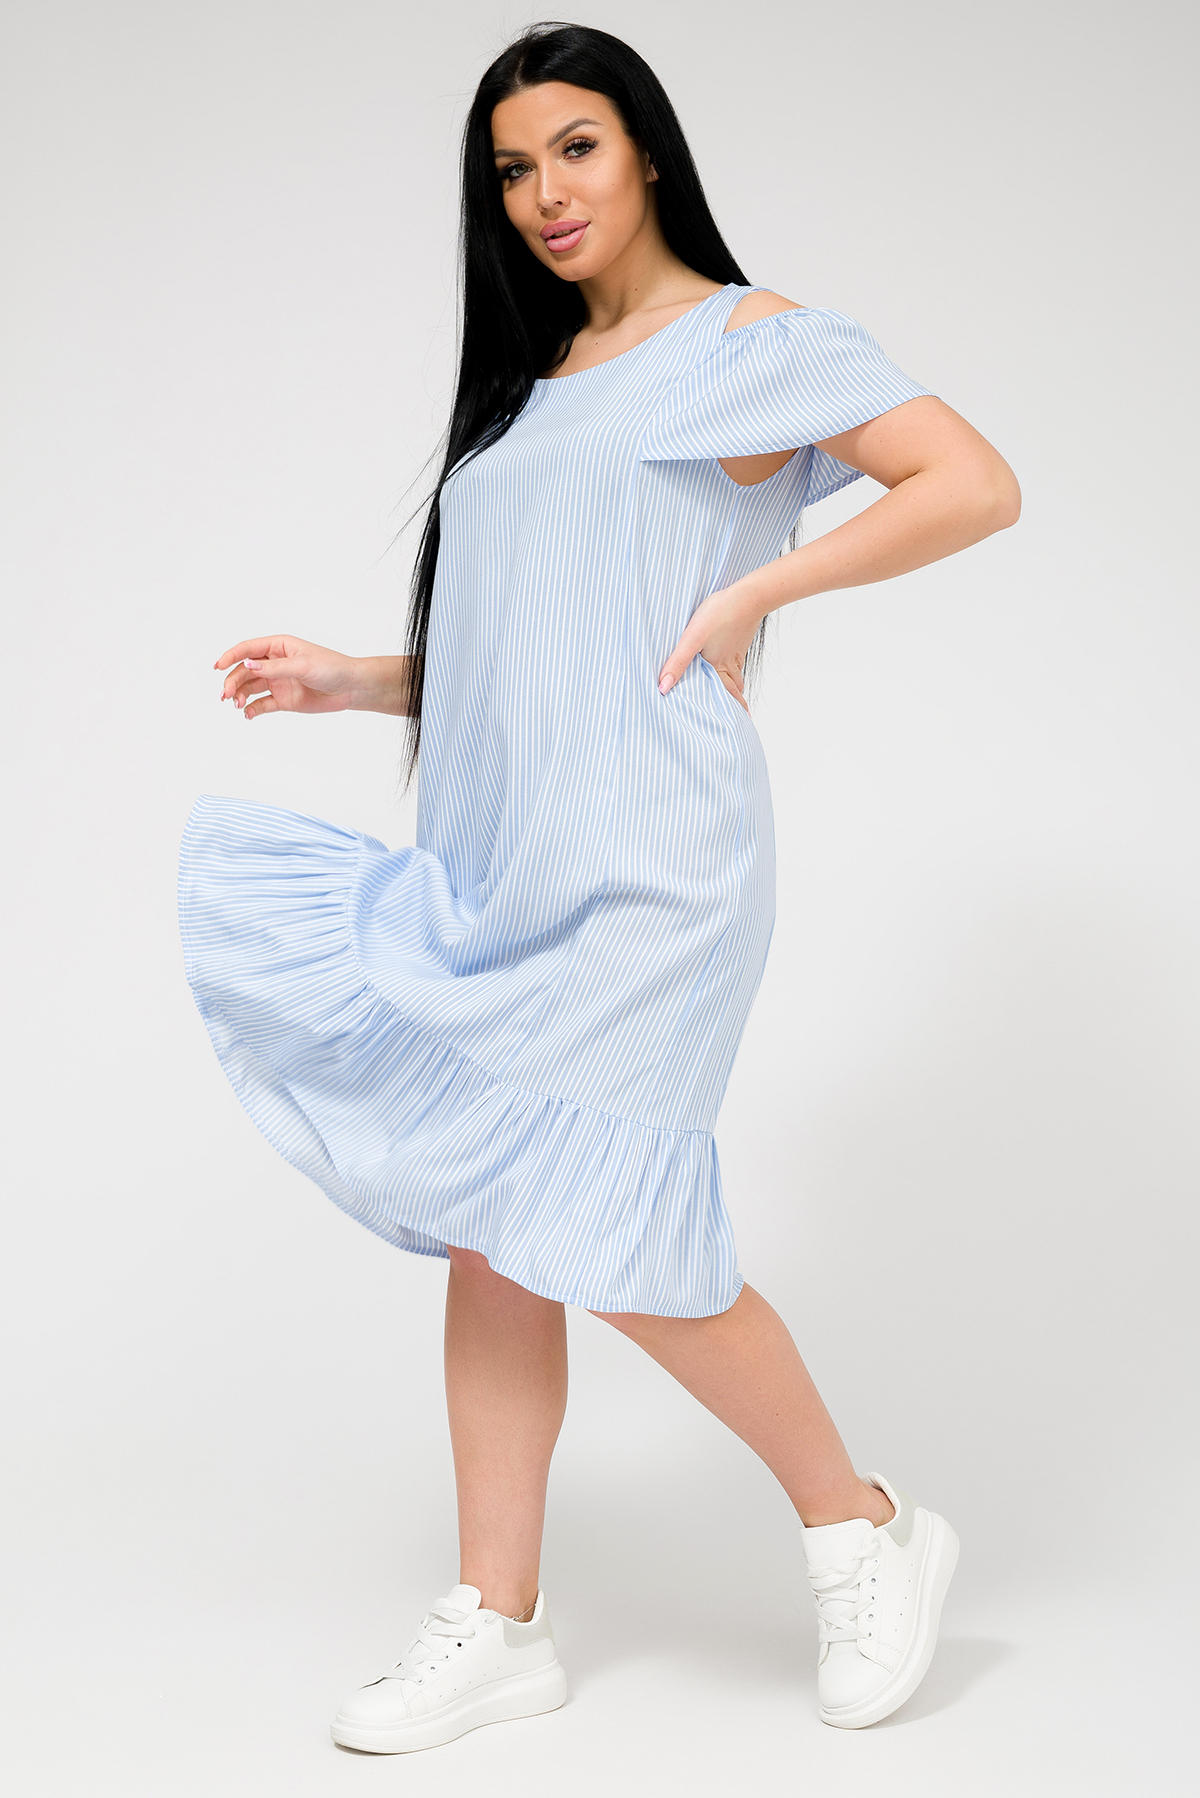 Платье женское Ш'аrliзе 0930 голубое 54 RU